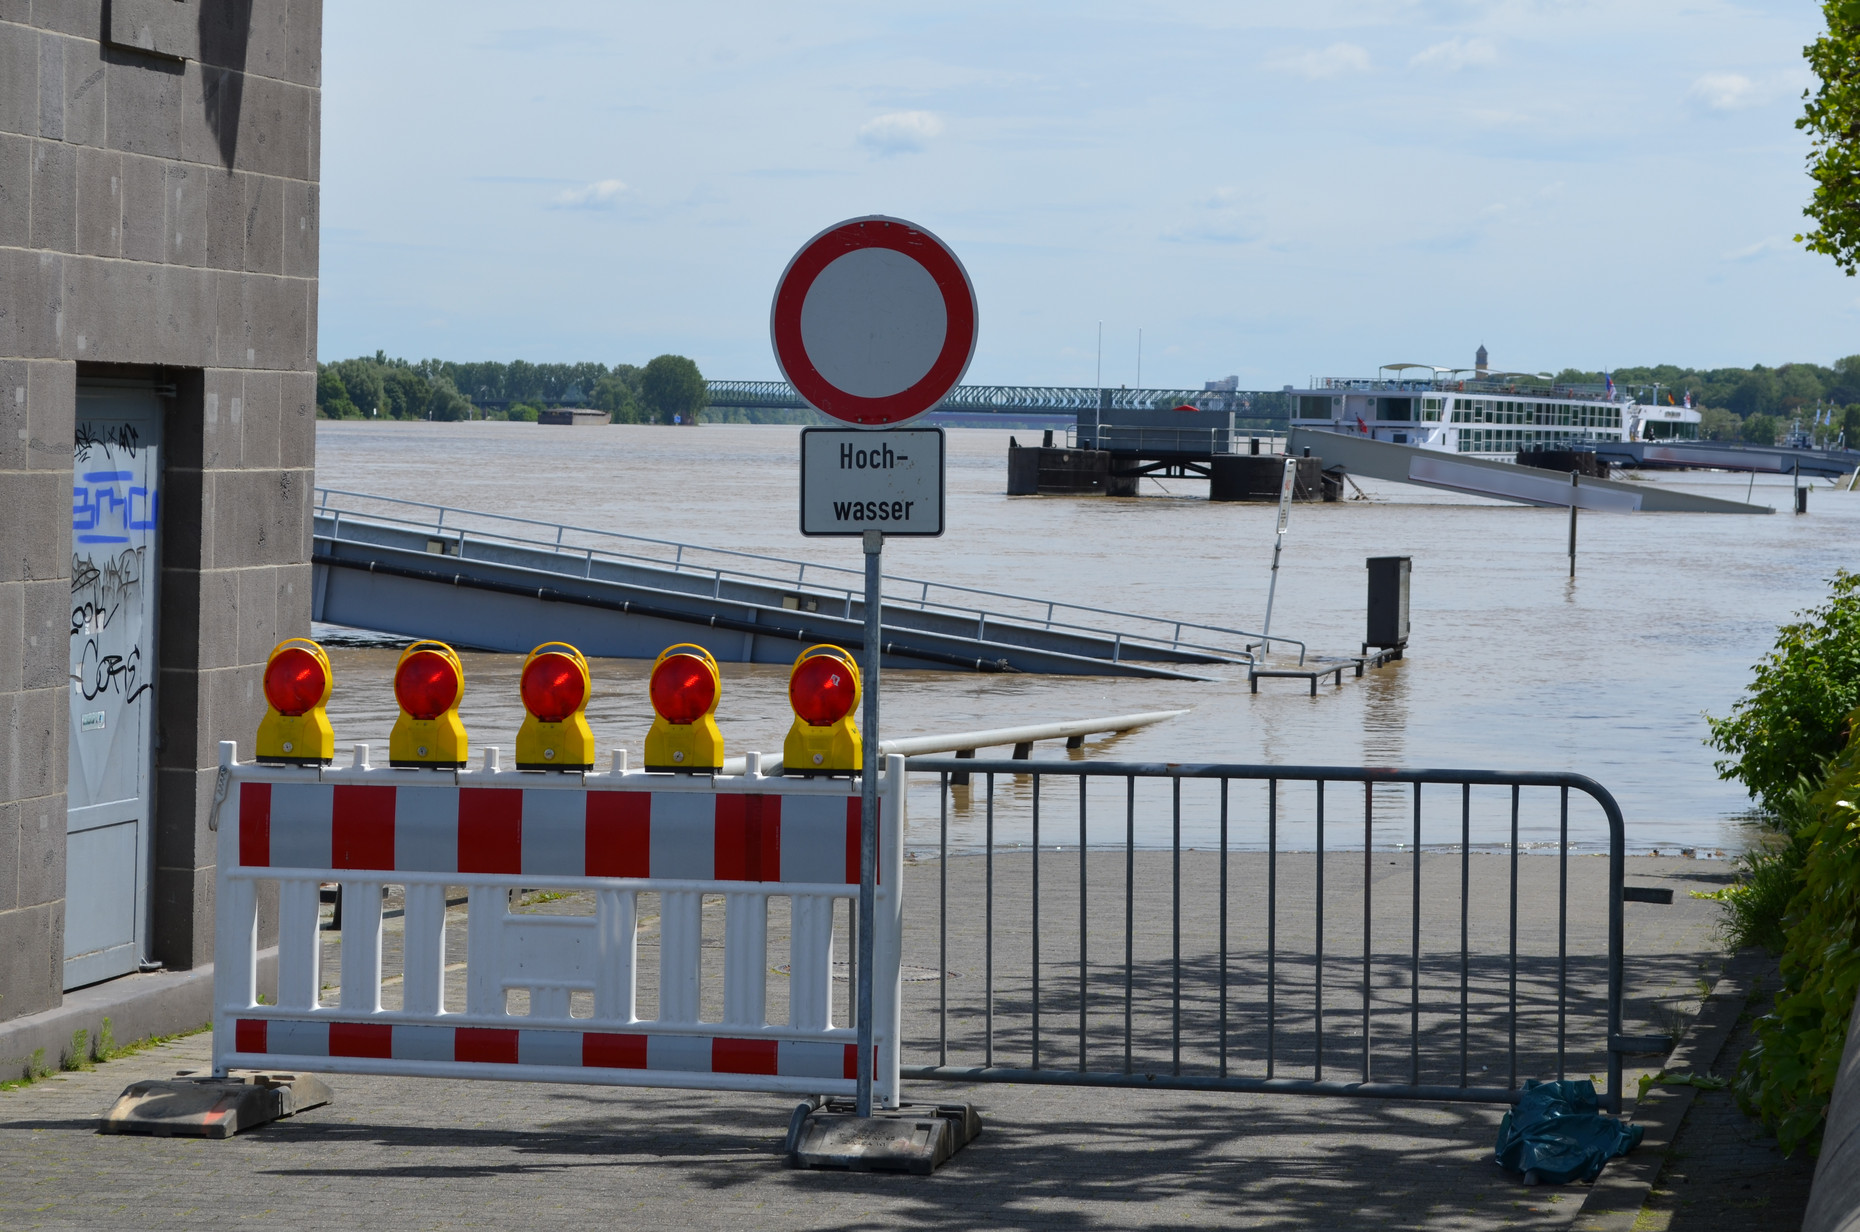 Hochwasser am Rhein in Mainz